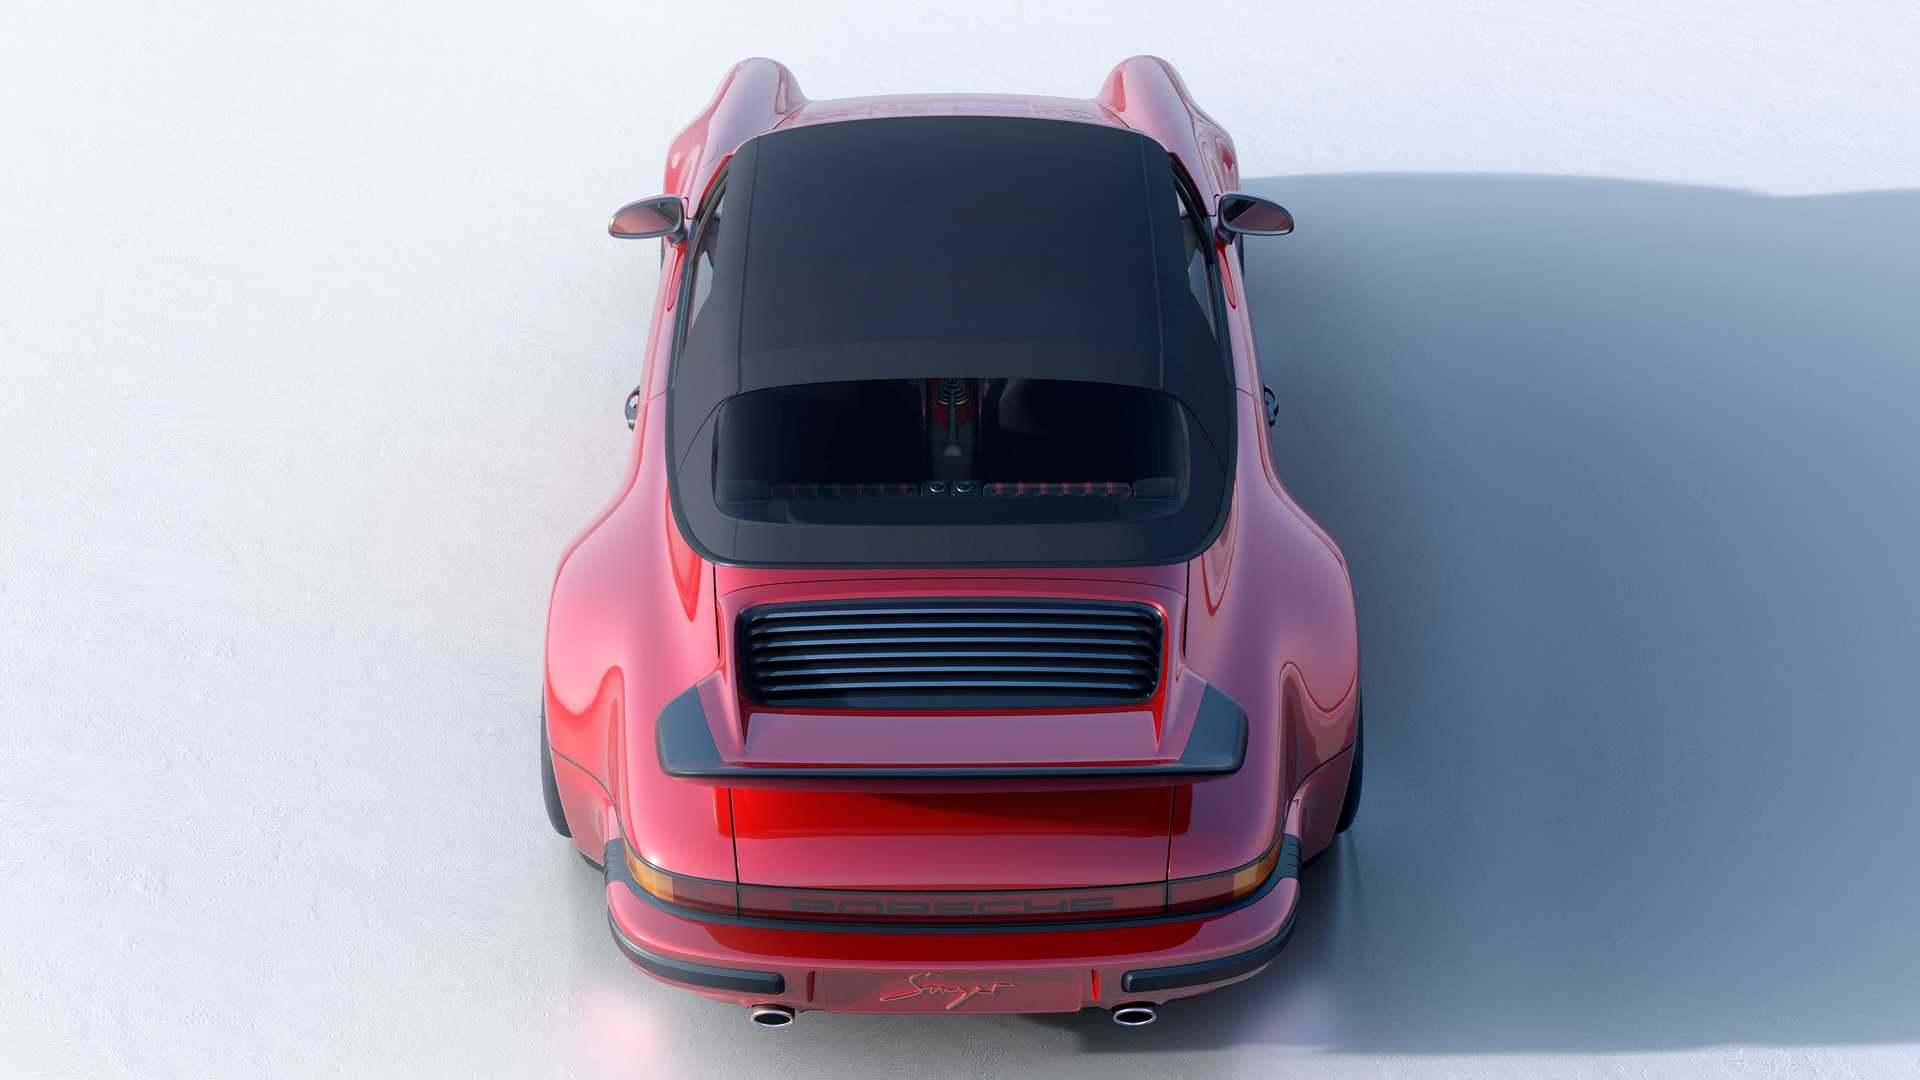 Singer Vehicle Design Porsche 911 964 Cabriolet Tuning 2022 10